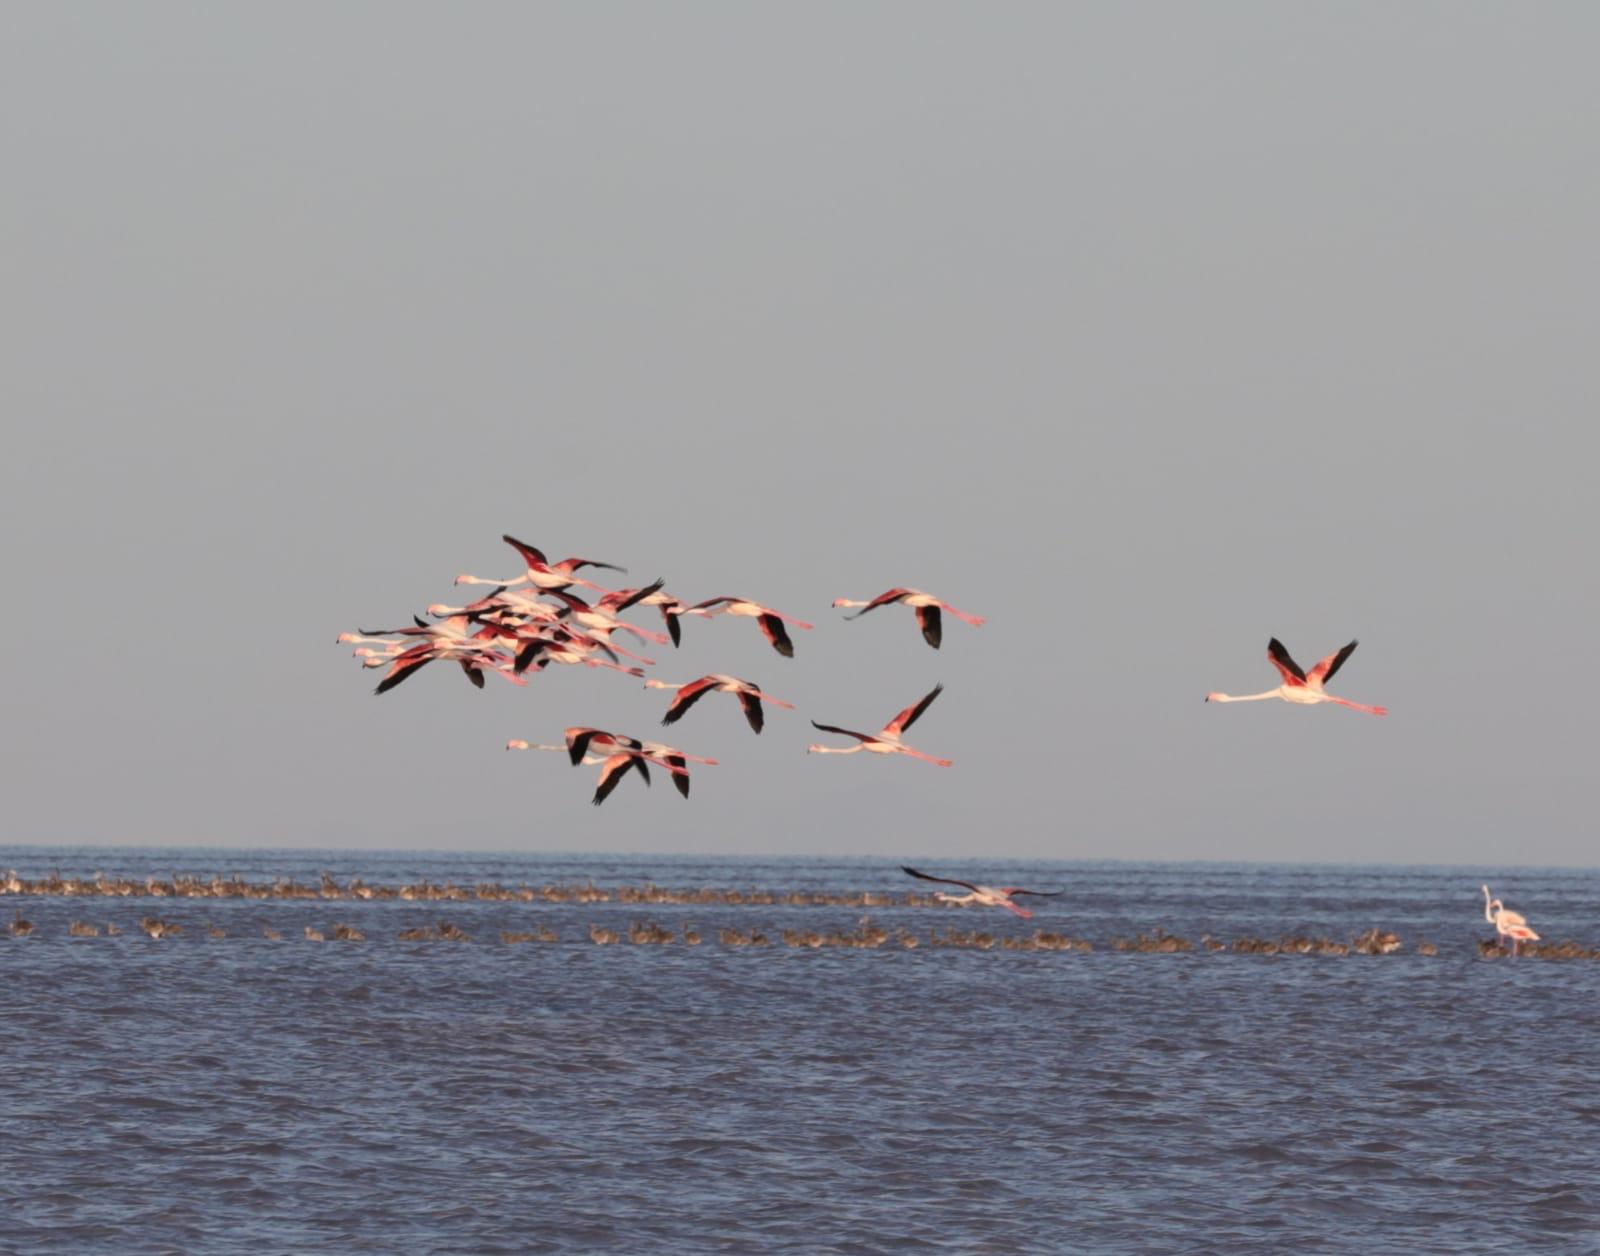 flamingoların gün batımında en iyi izlendiği yer Aksaray’dır